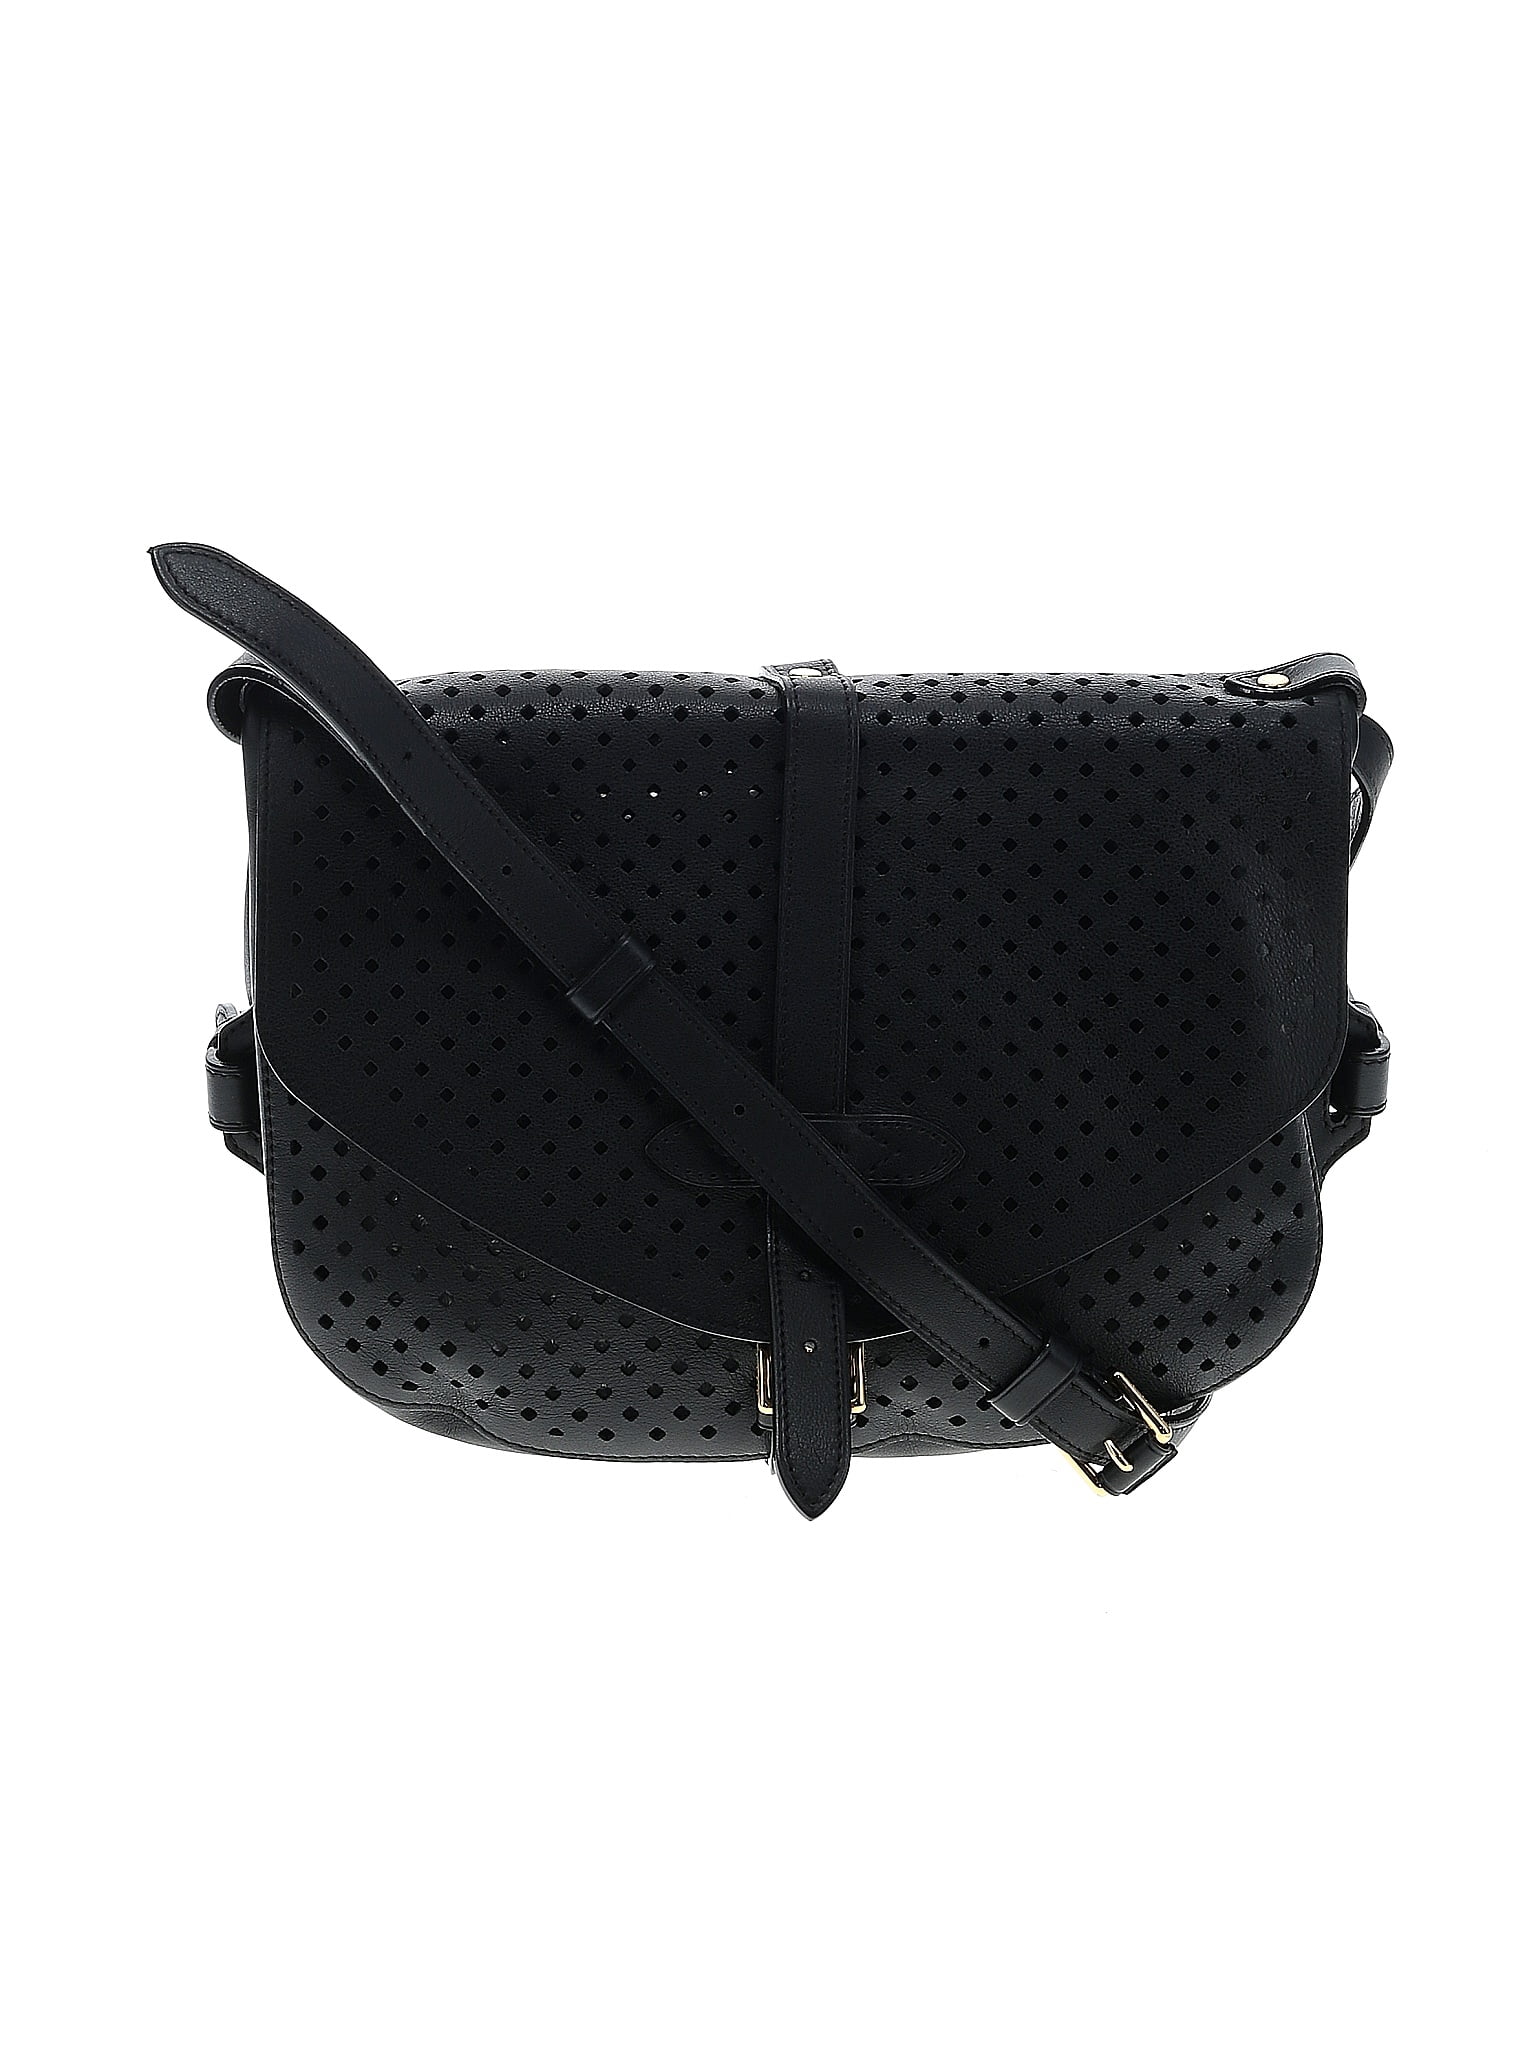 Sofia coppola leather handbag Louis Vuitton White in Leather